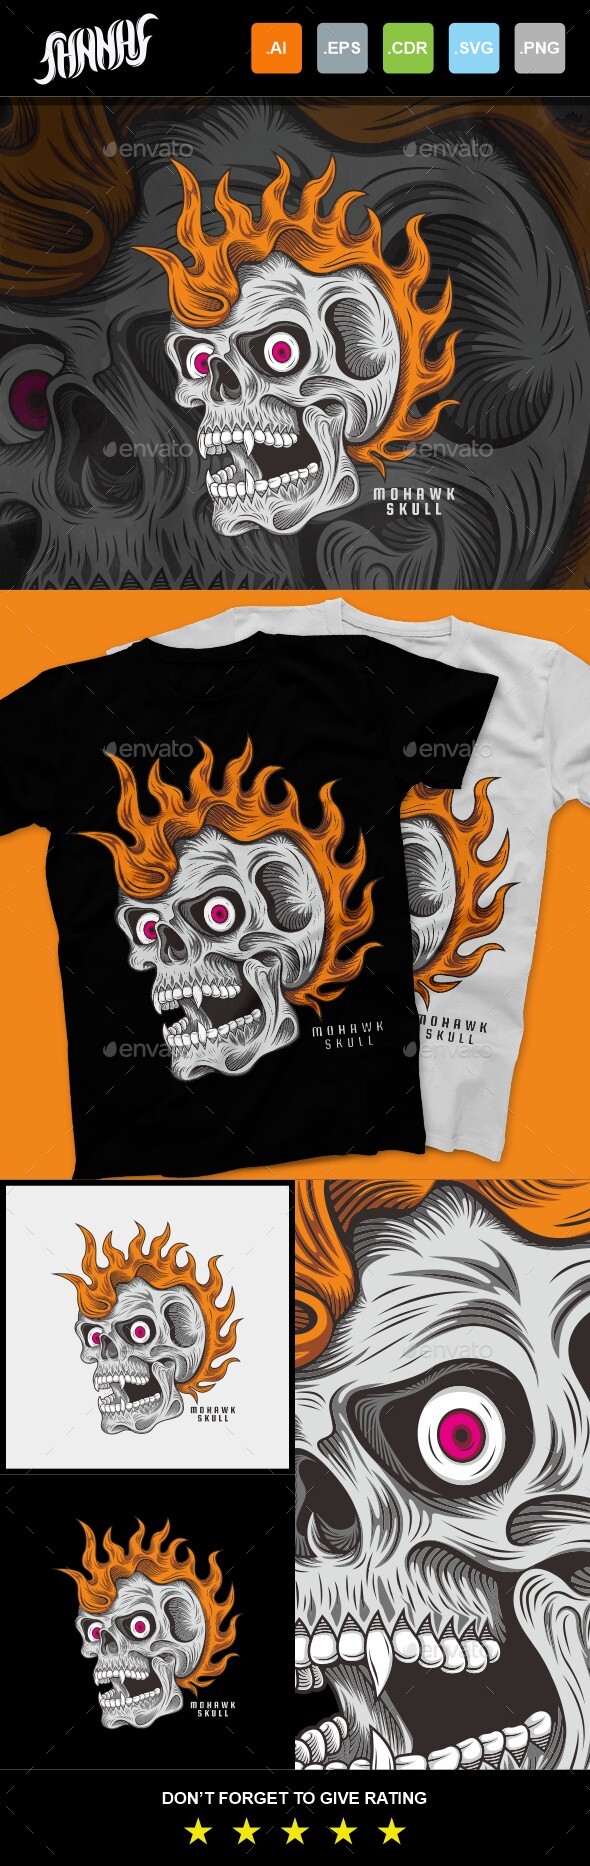 Mohawk Skull T-Shirt Design